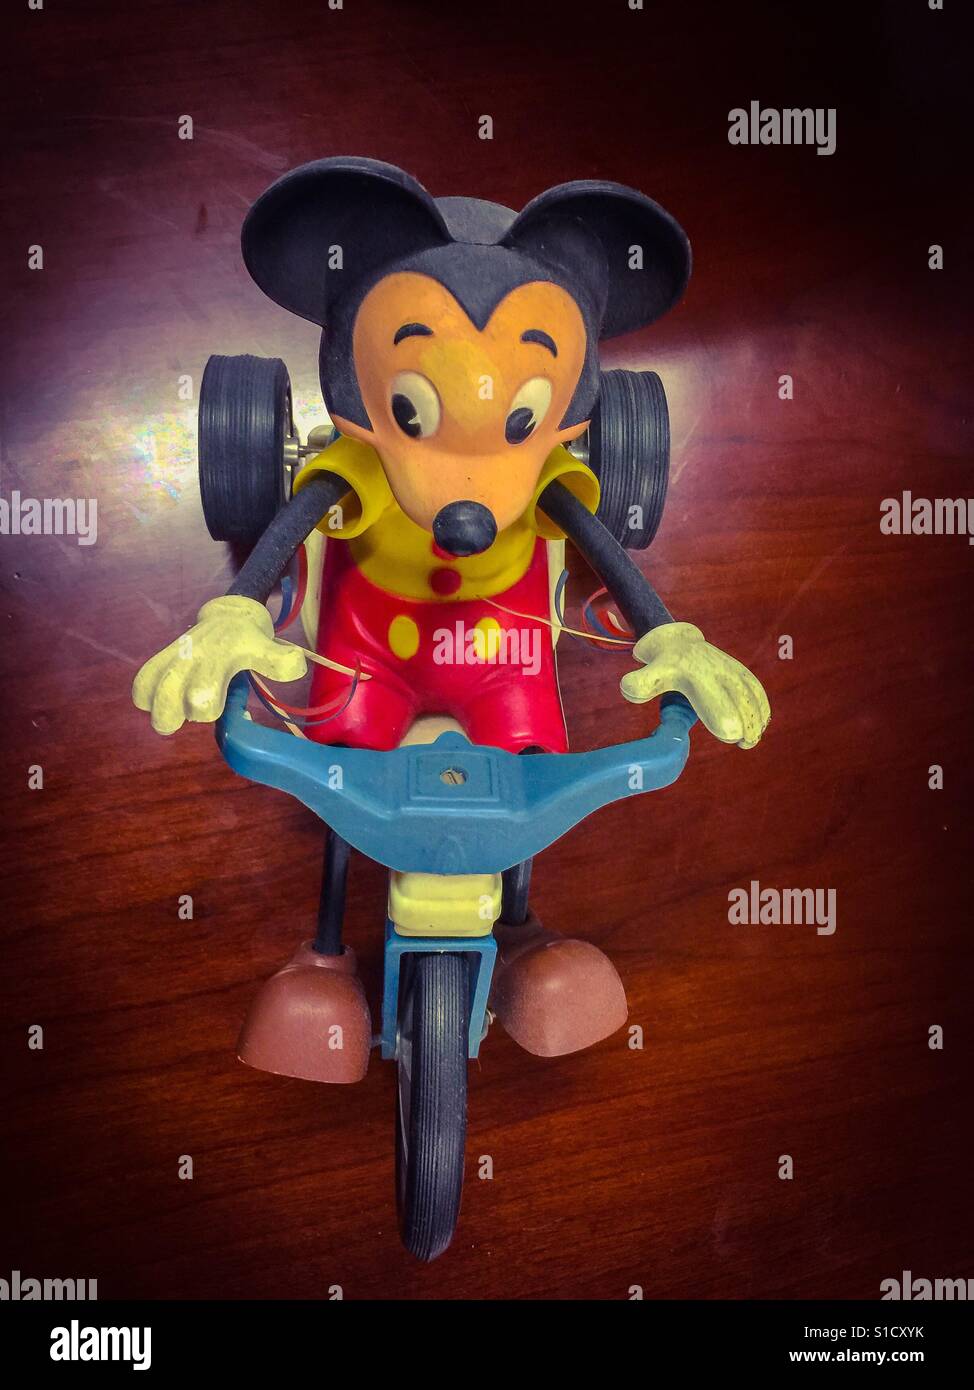 Mickey Mouse auf einem Dreirad. Ein beliebtes Spielzeug aus einer früheren Ära. Immer noch ein lebhafter, heiter Geist. Sorglos. Verspielt. Die berühmteste Maus der Welt. Stockfoto